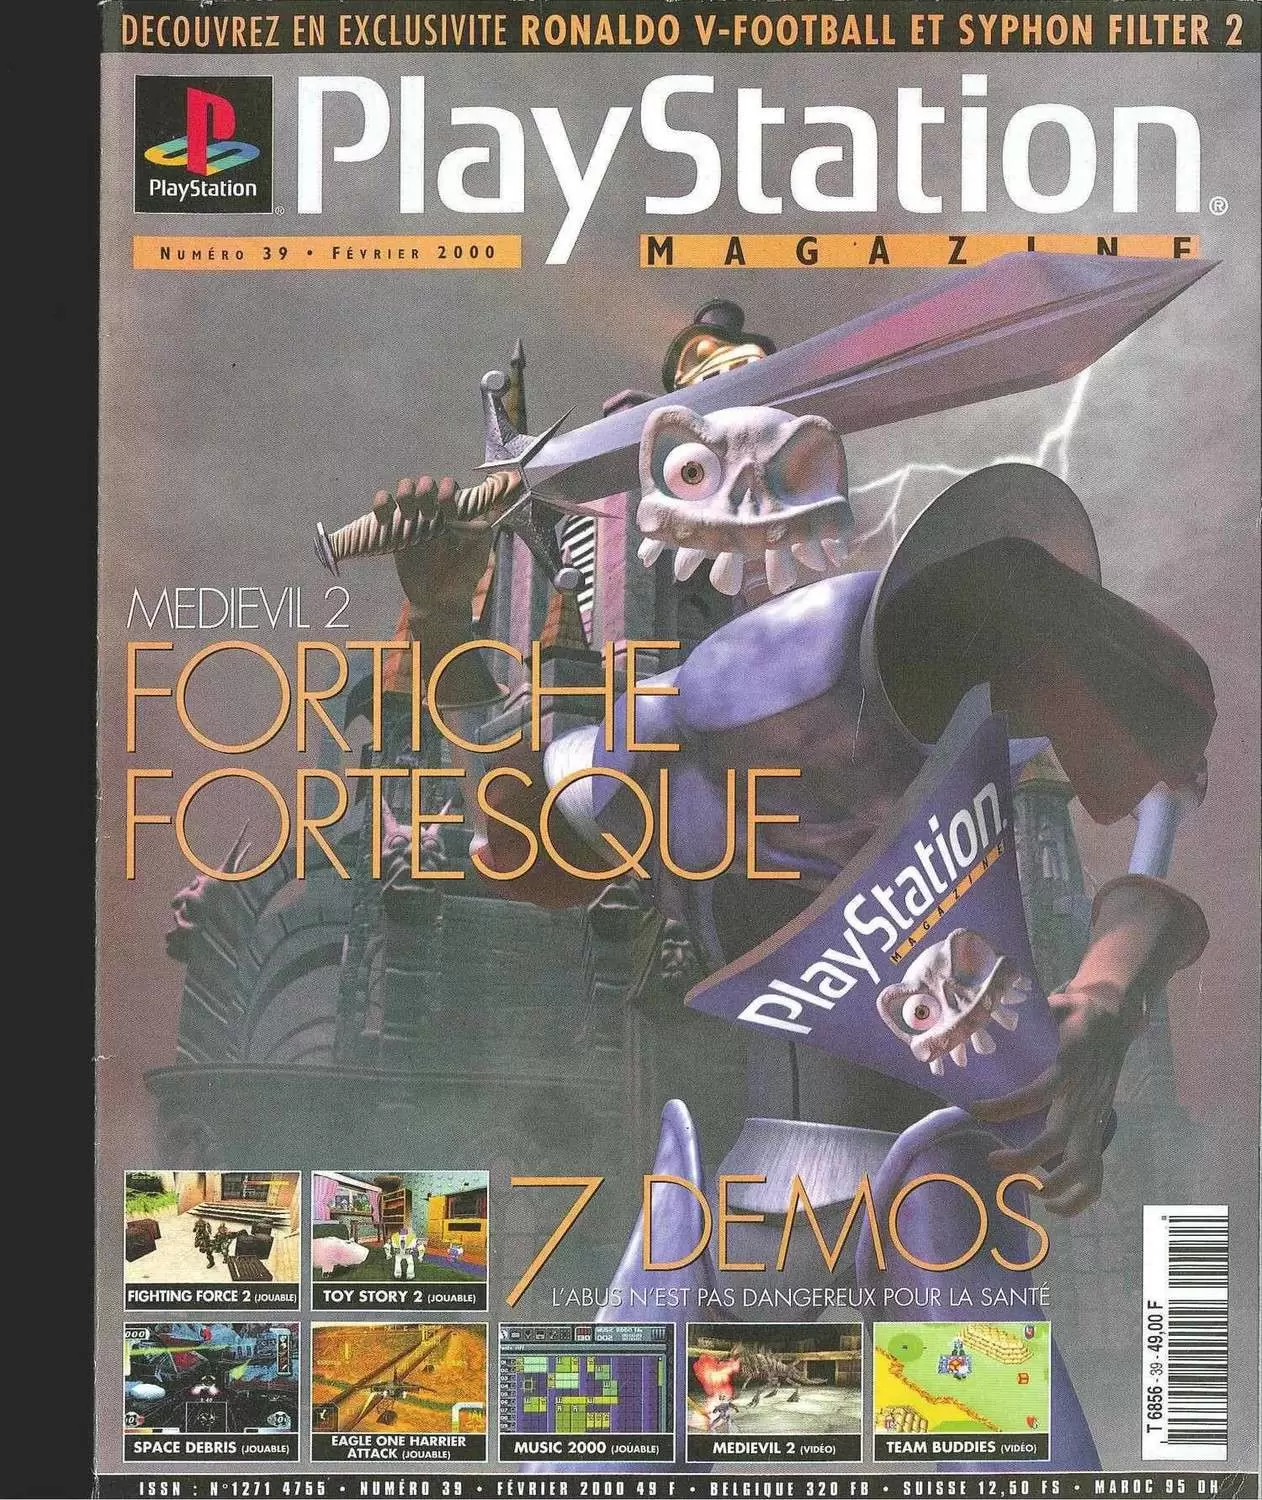 Playstation Magazine - Playstation Magazine #39